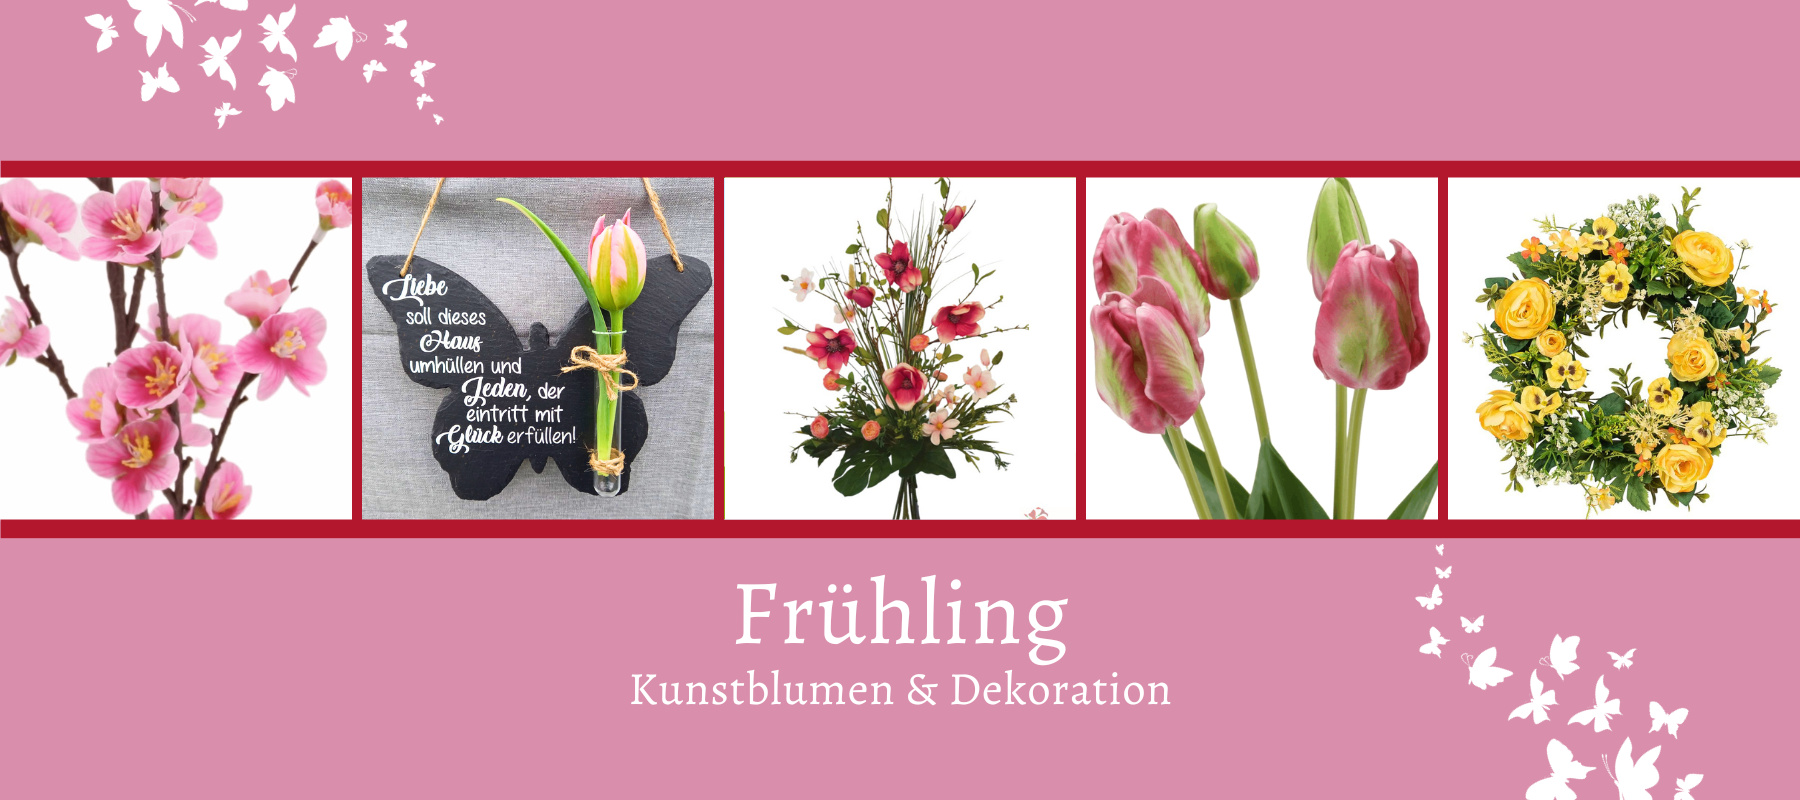 Frühling die schönsten Kunstblumen dekoration mit...